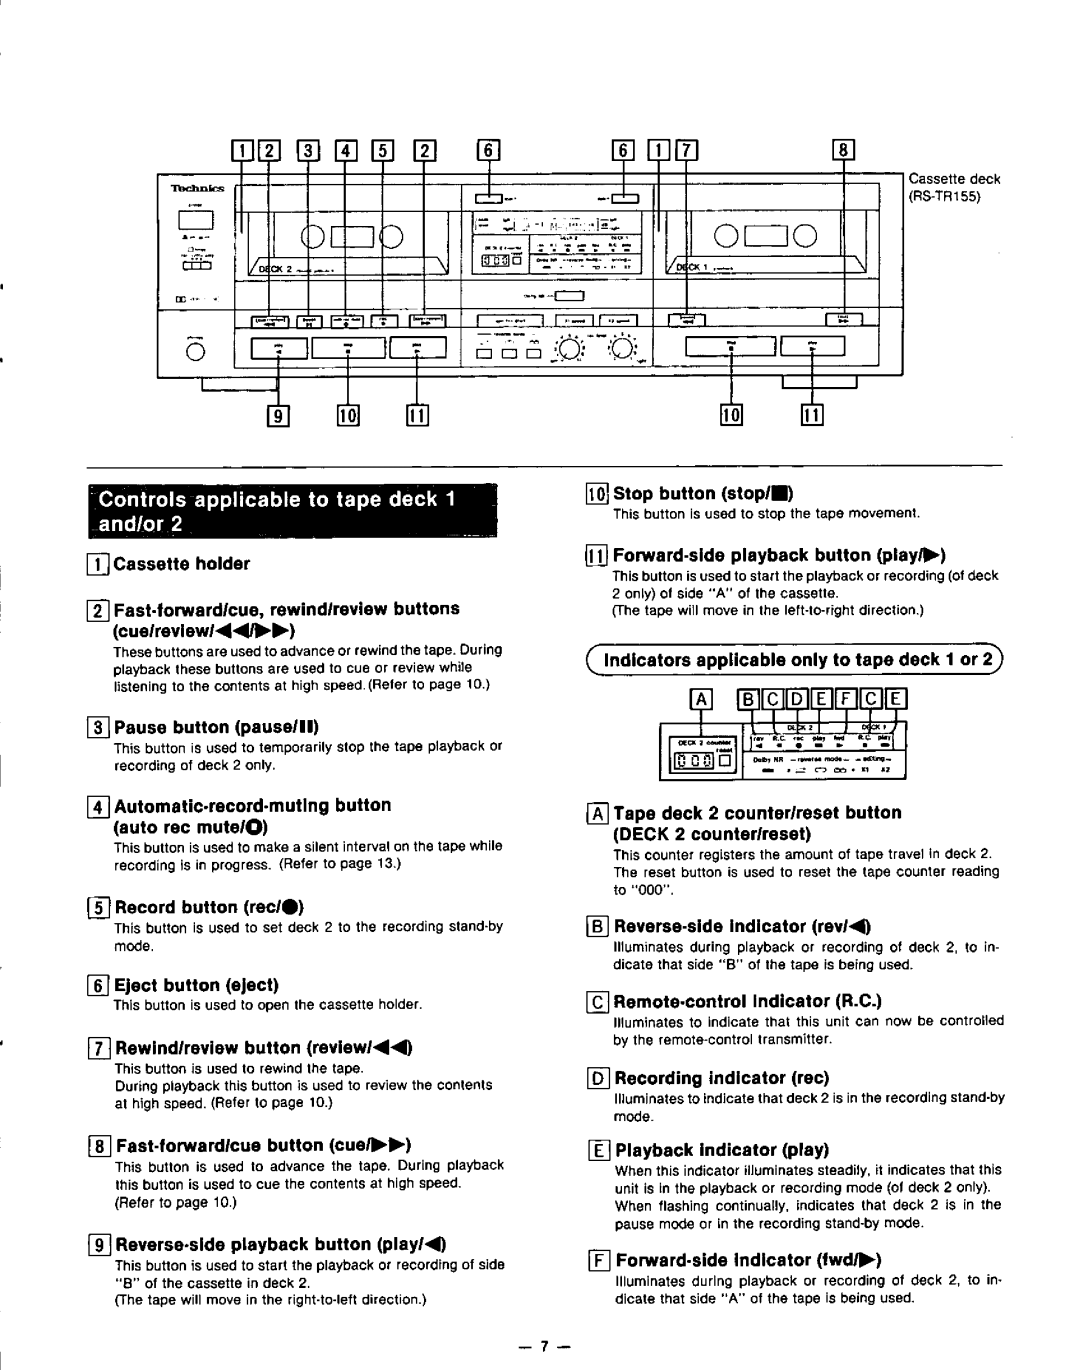 Technics RS-TR155 RS-TR255 manual 